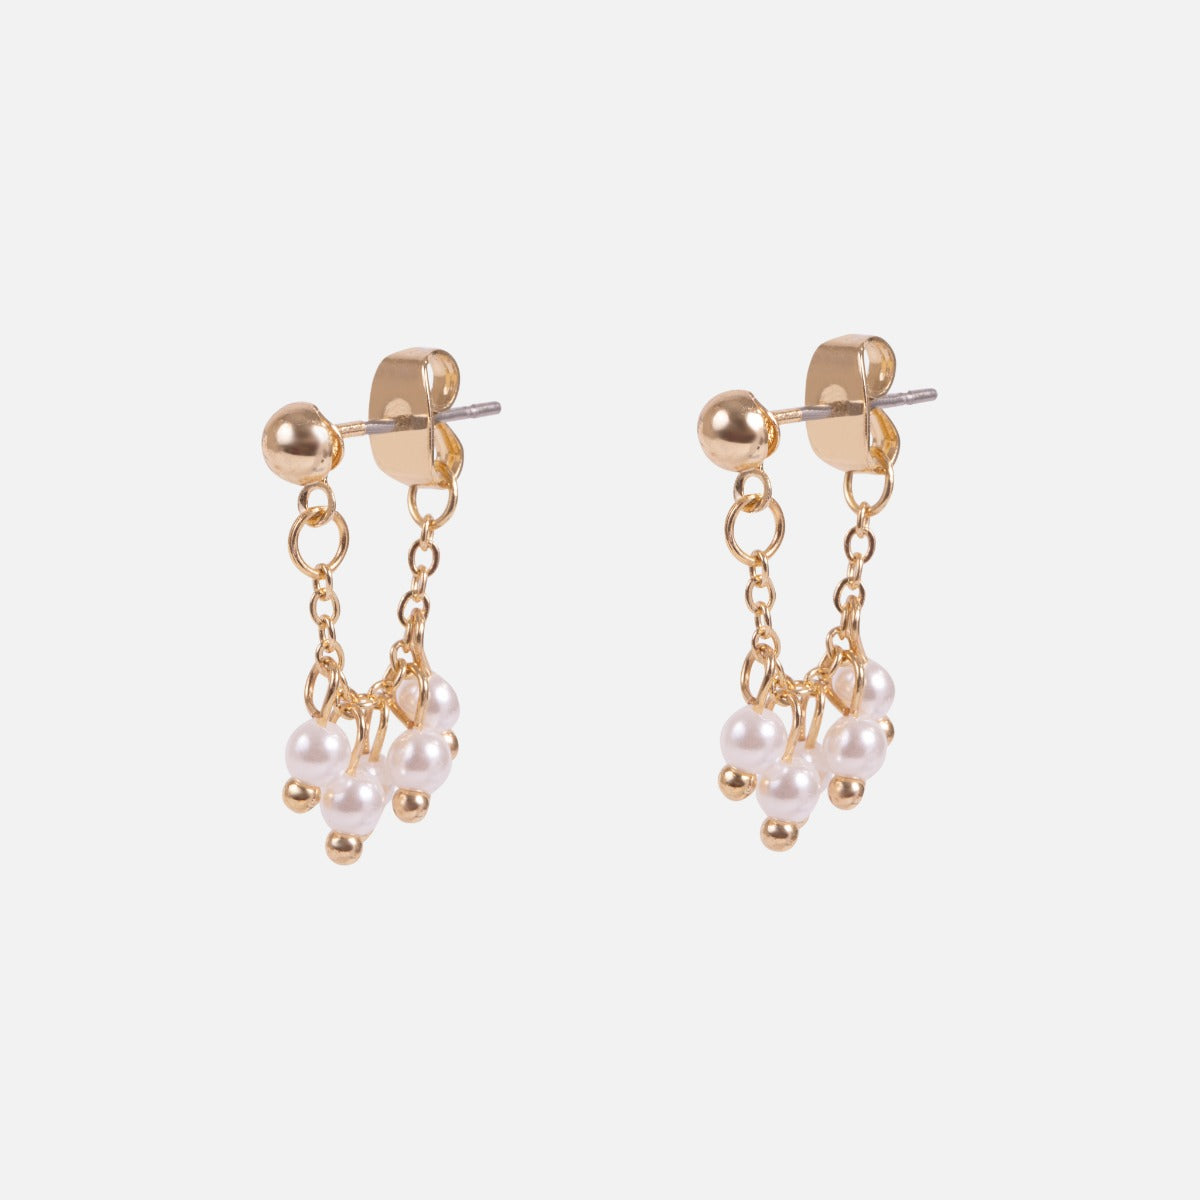 Trio de boucles d’oreilles doré fixe et anneaux avec perles